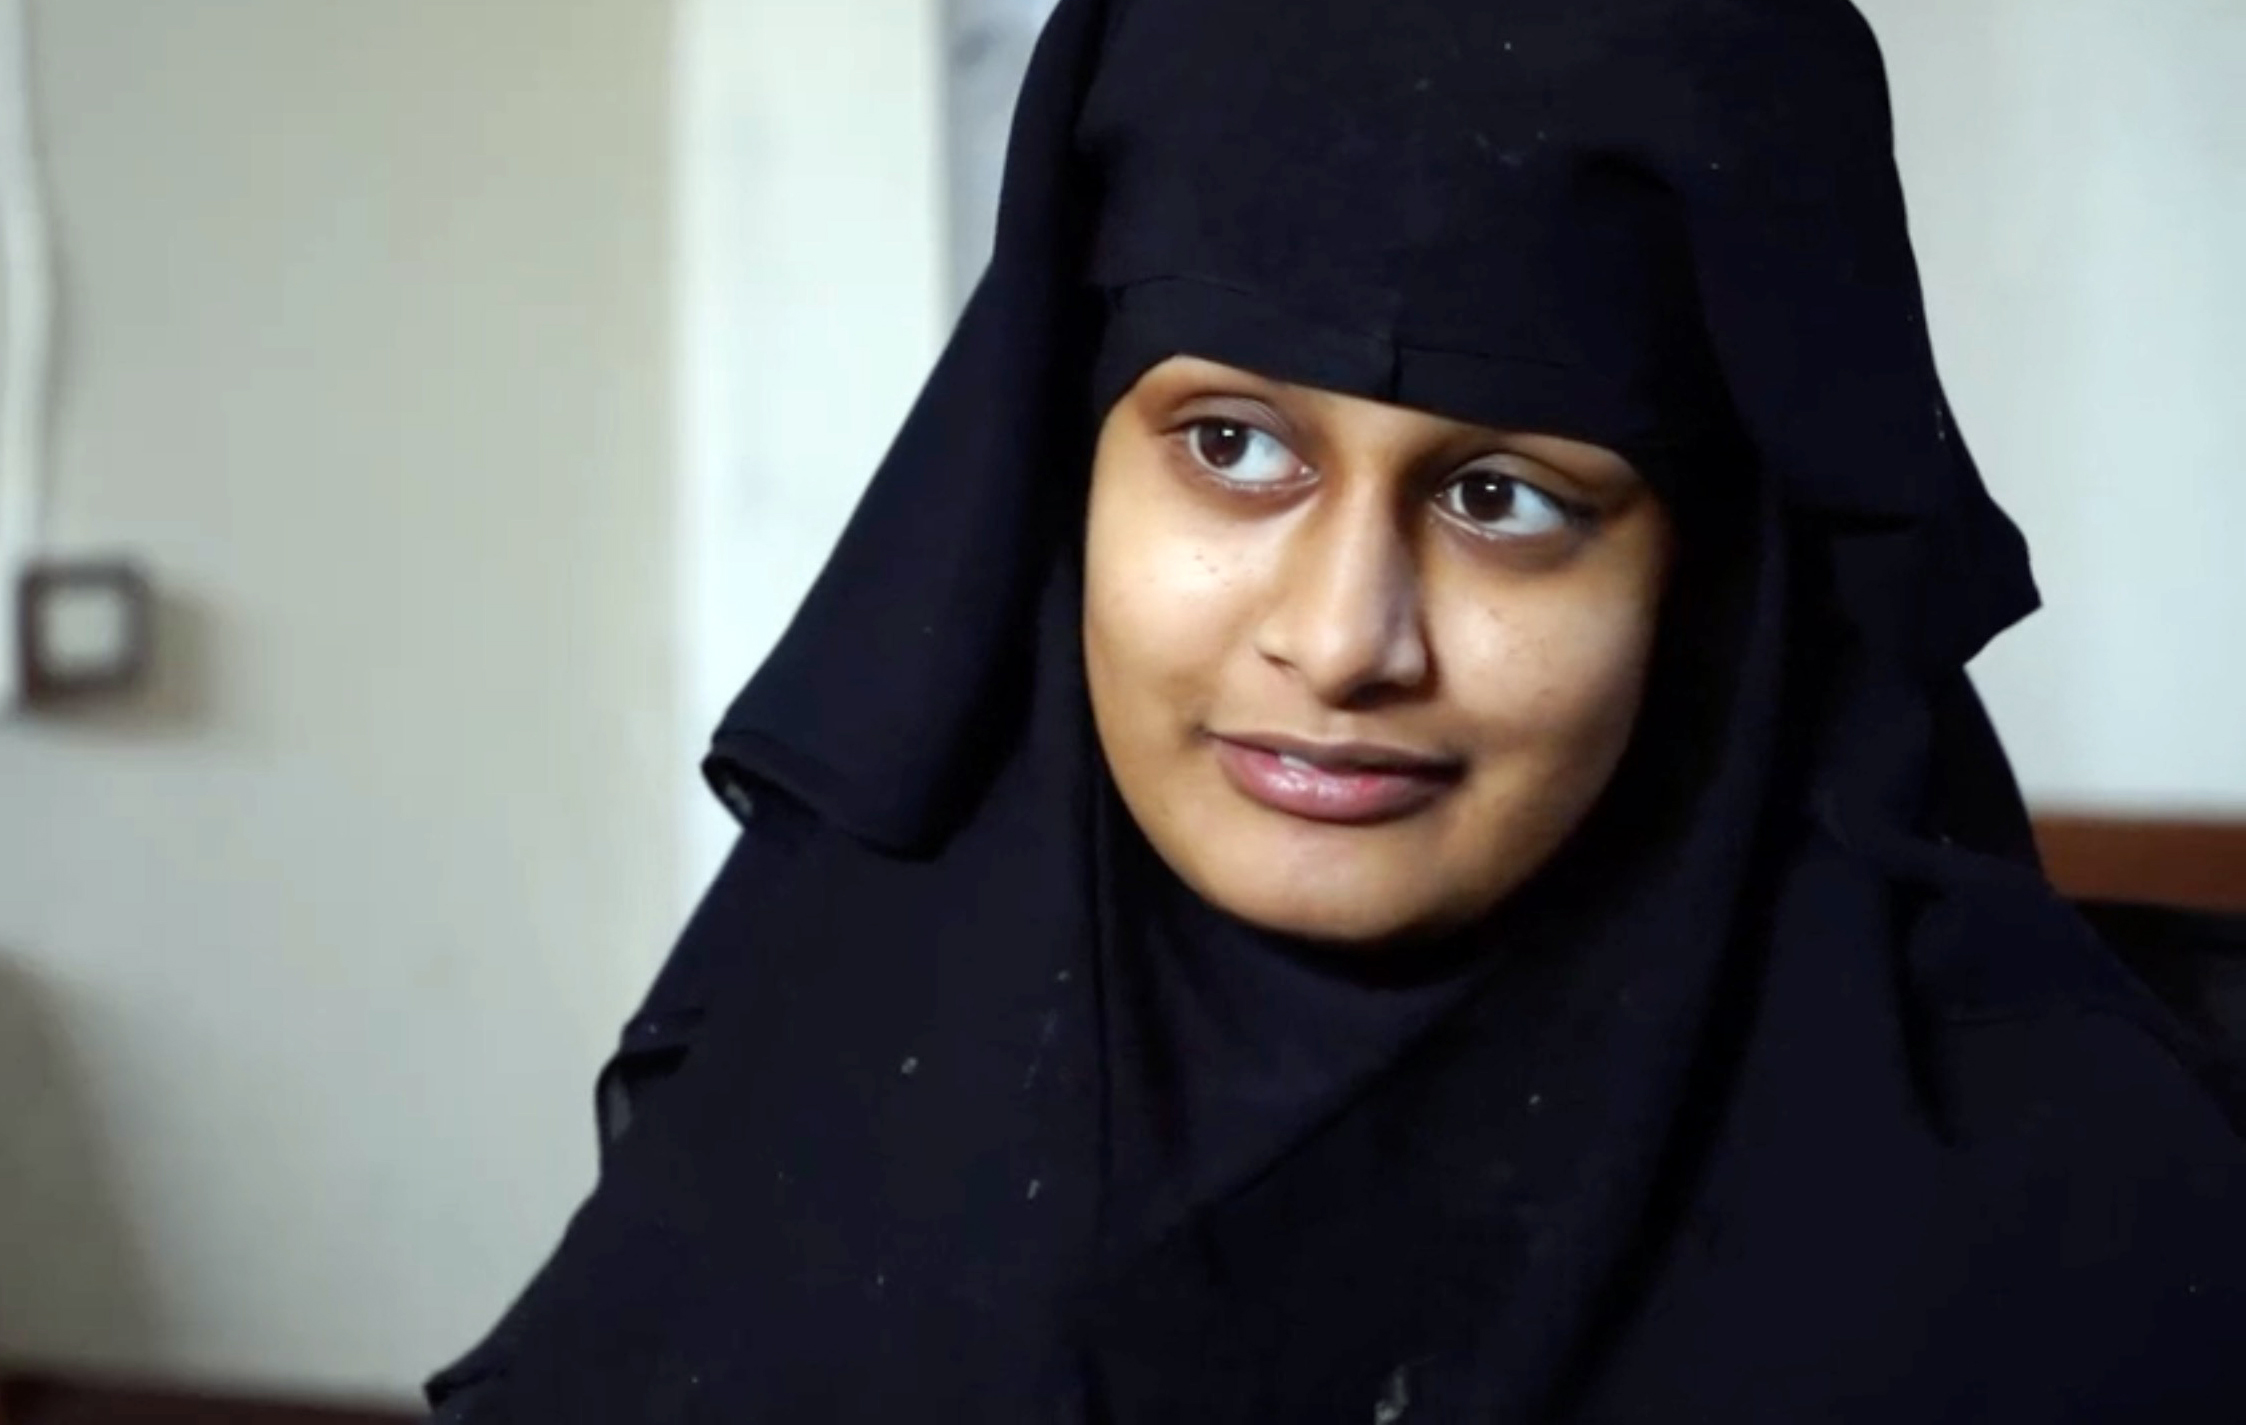 Shamima war 15, als sie nach Syrien reiste